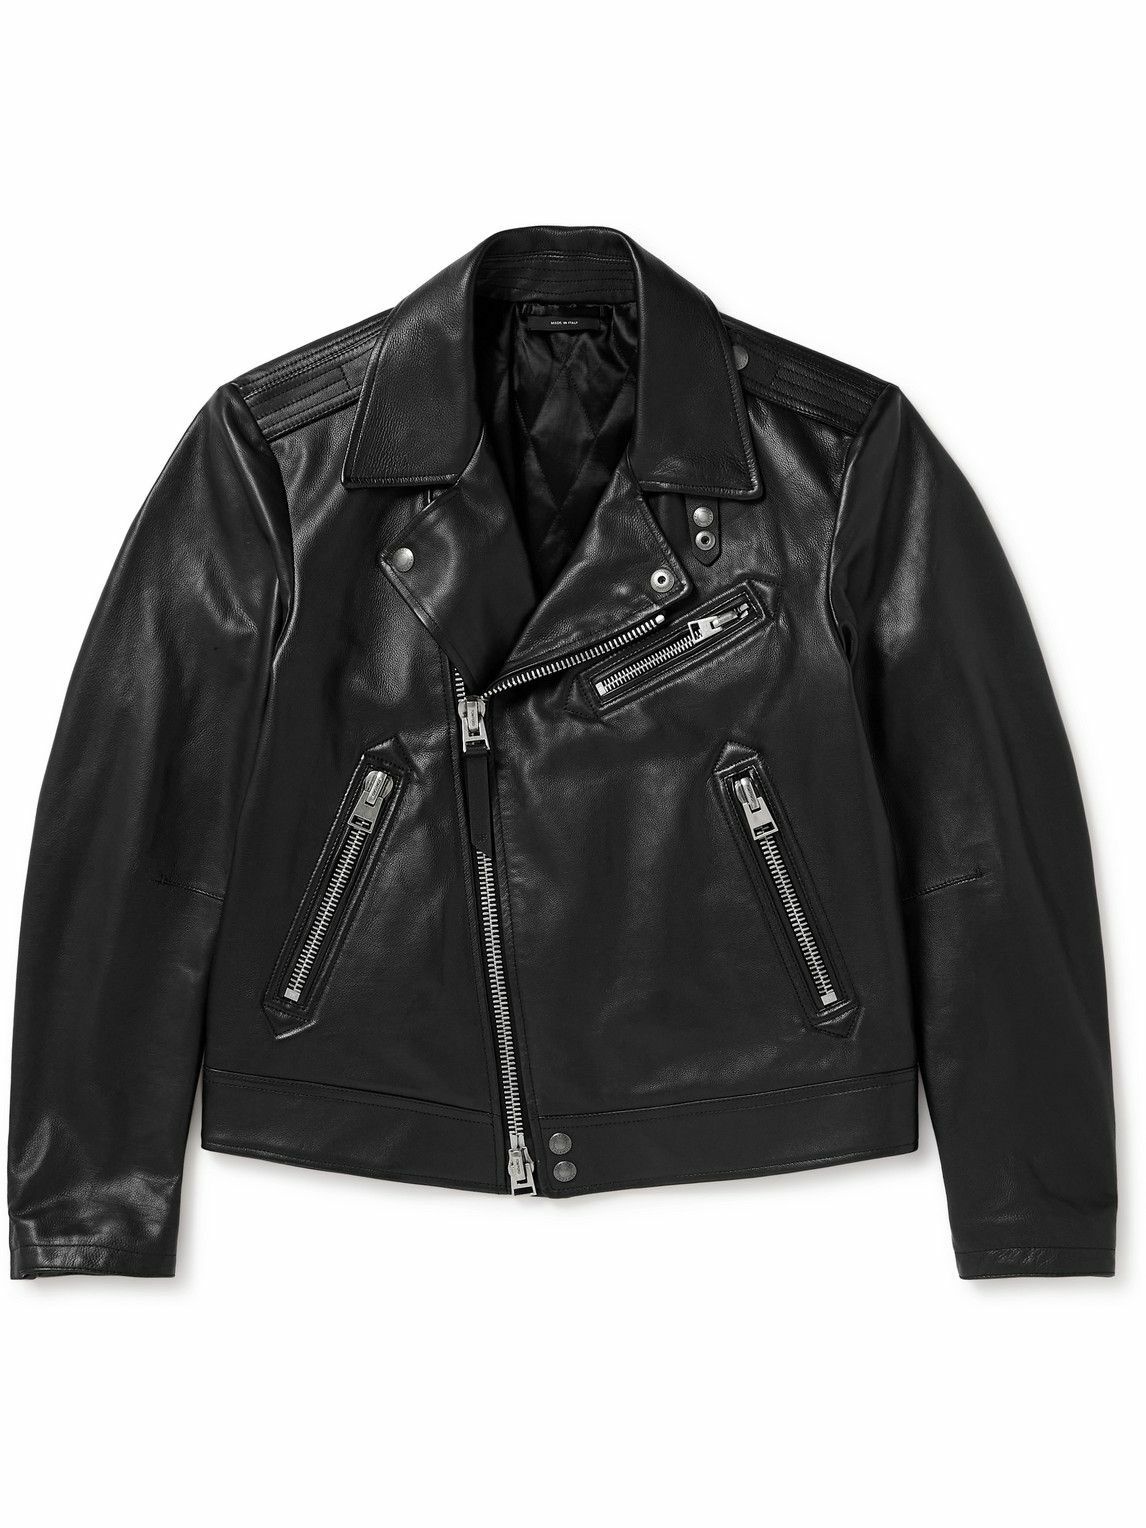 Photo: TOM FORD - Full-Grain Leather Biker Jacket - Black